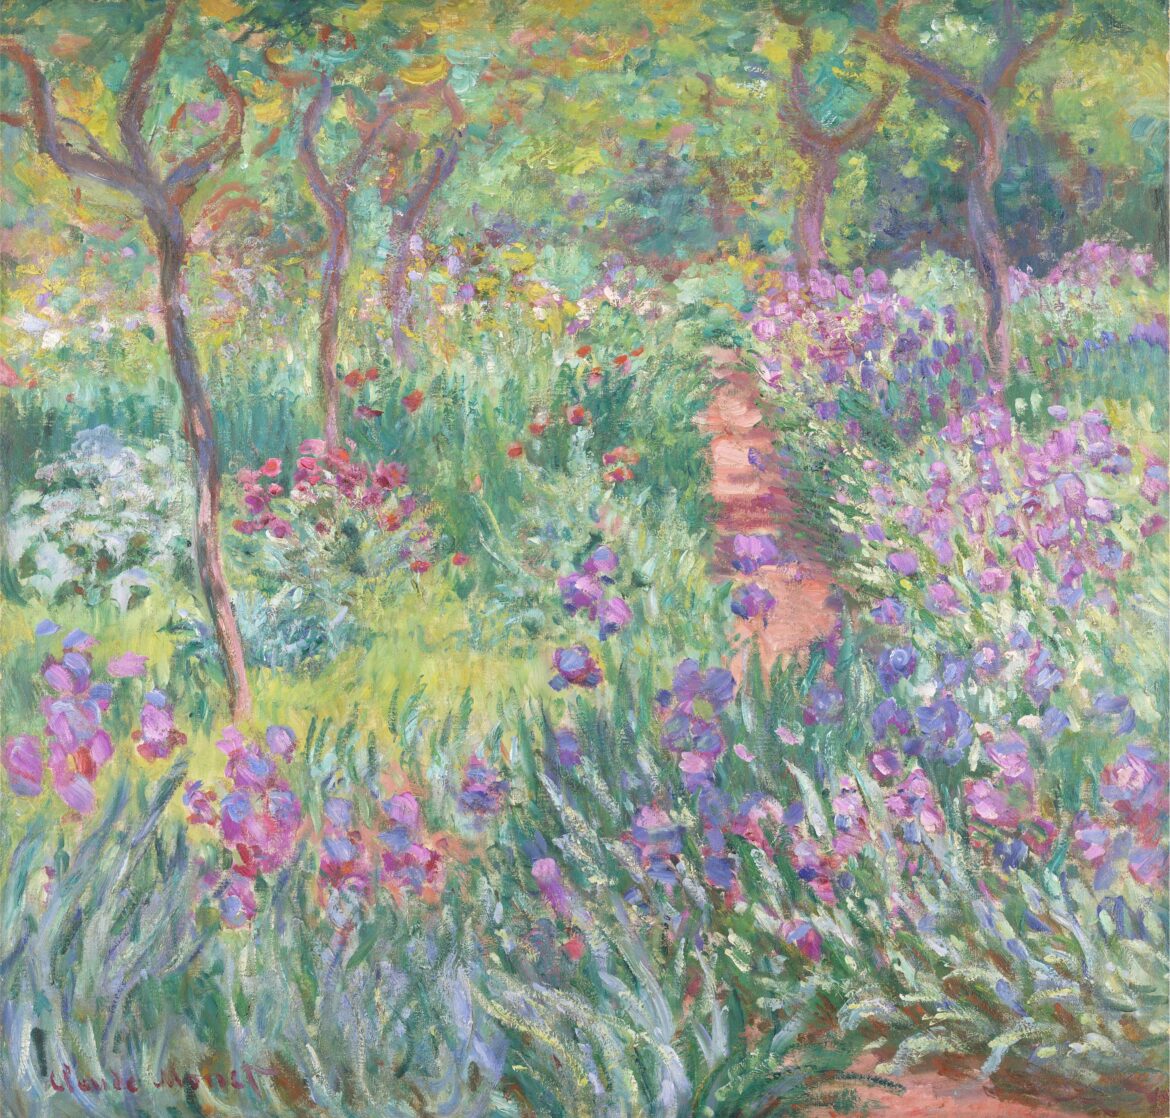 【無料壁紙】クロード・モネ「ジヴェルニーの画家の庭 (1900)」 / Claude Monet_The Artist’s Garden in Giverny (1900)